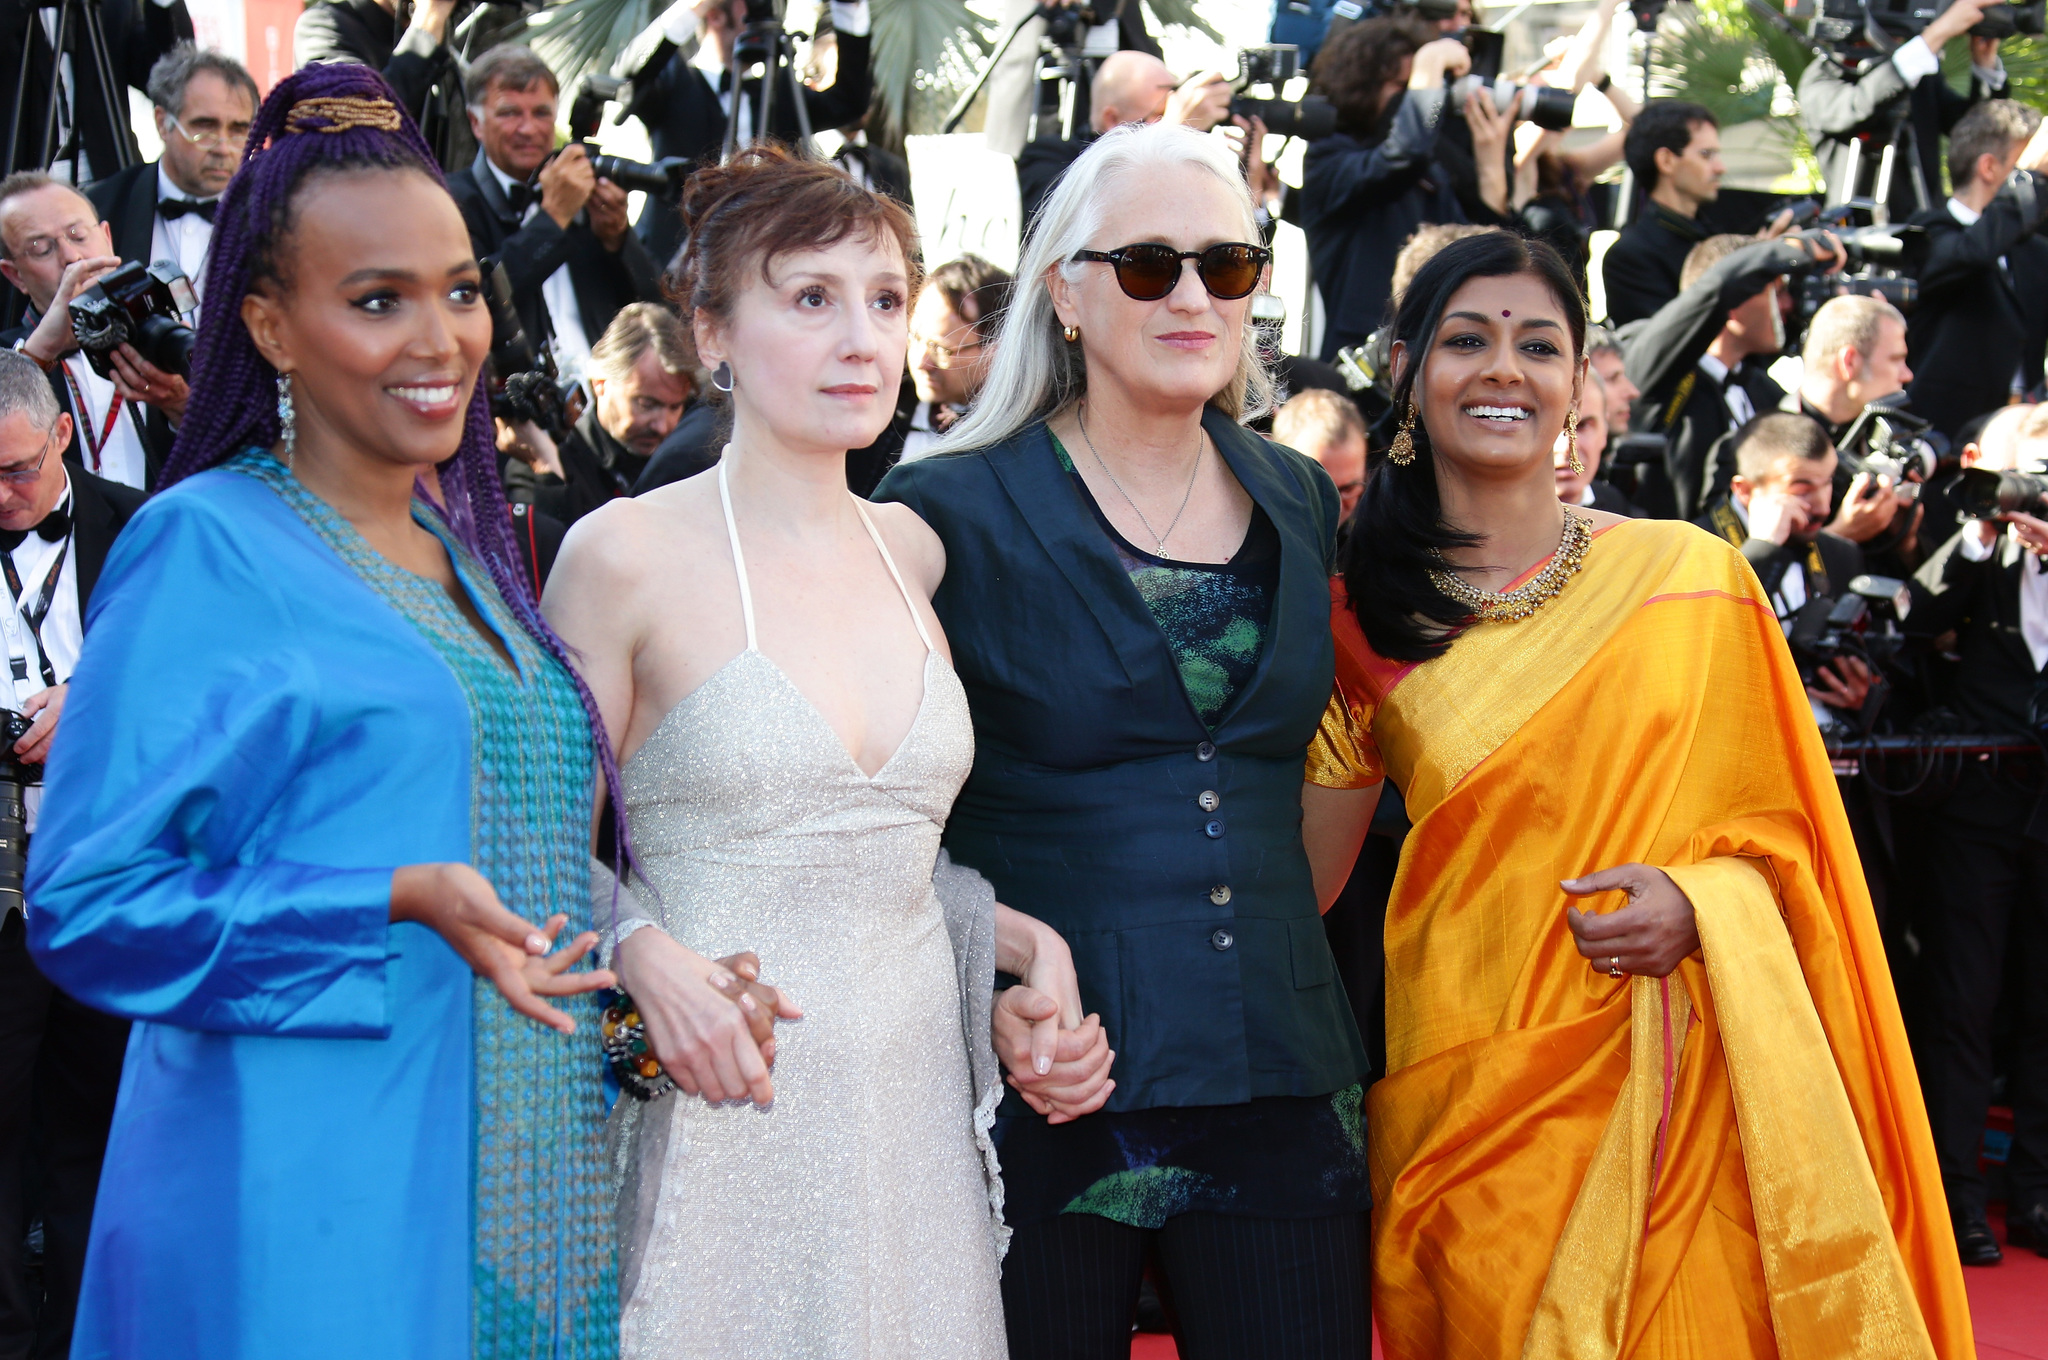 Nicoletta Braschi, Jane Campion, Nandita Das and Maji-da Abdi at event of Zulu (2013)